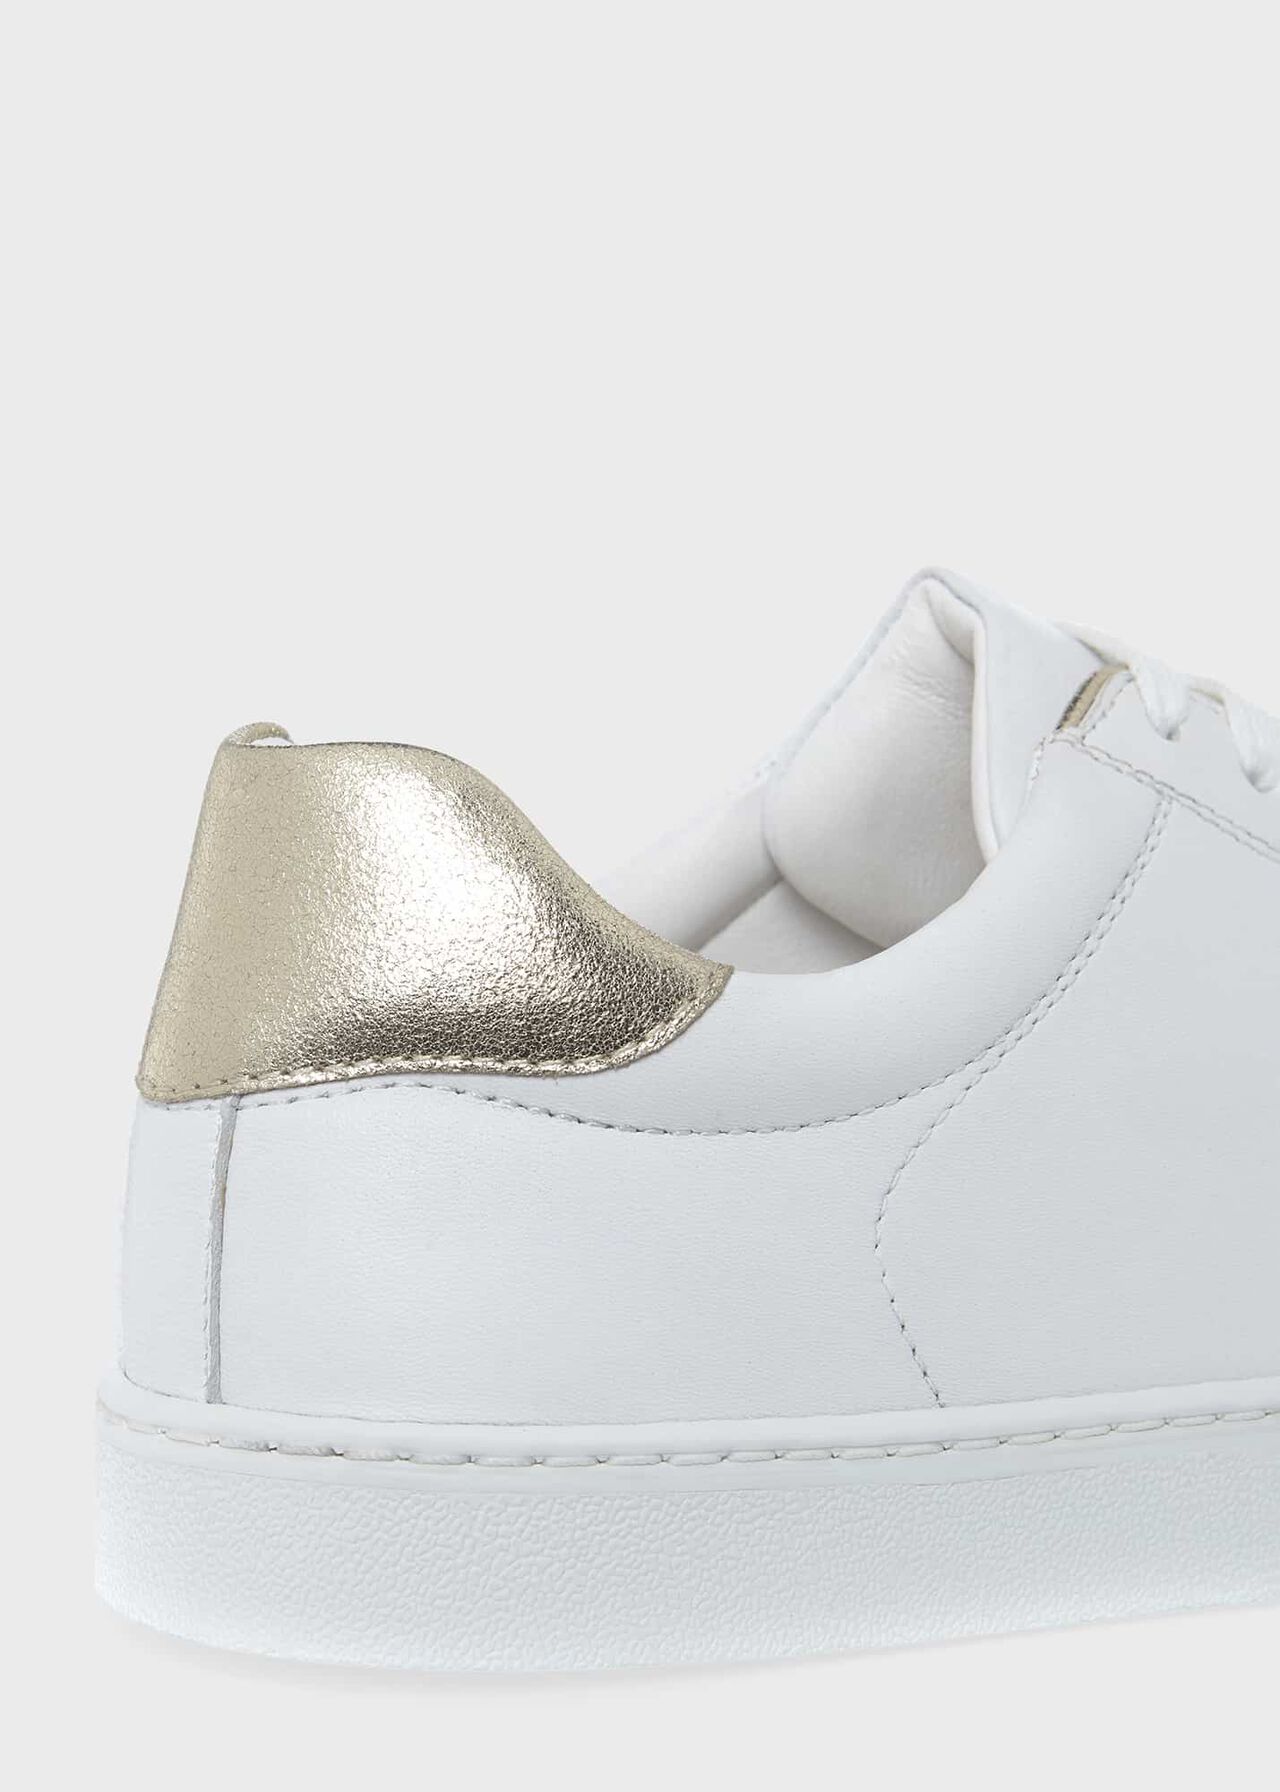 Kaya Sneakers, White Gold, hi-res